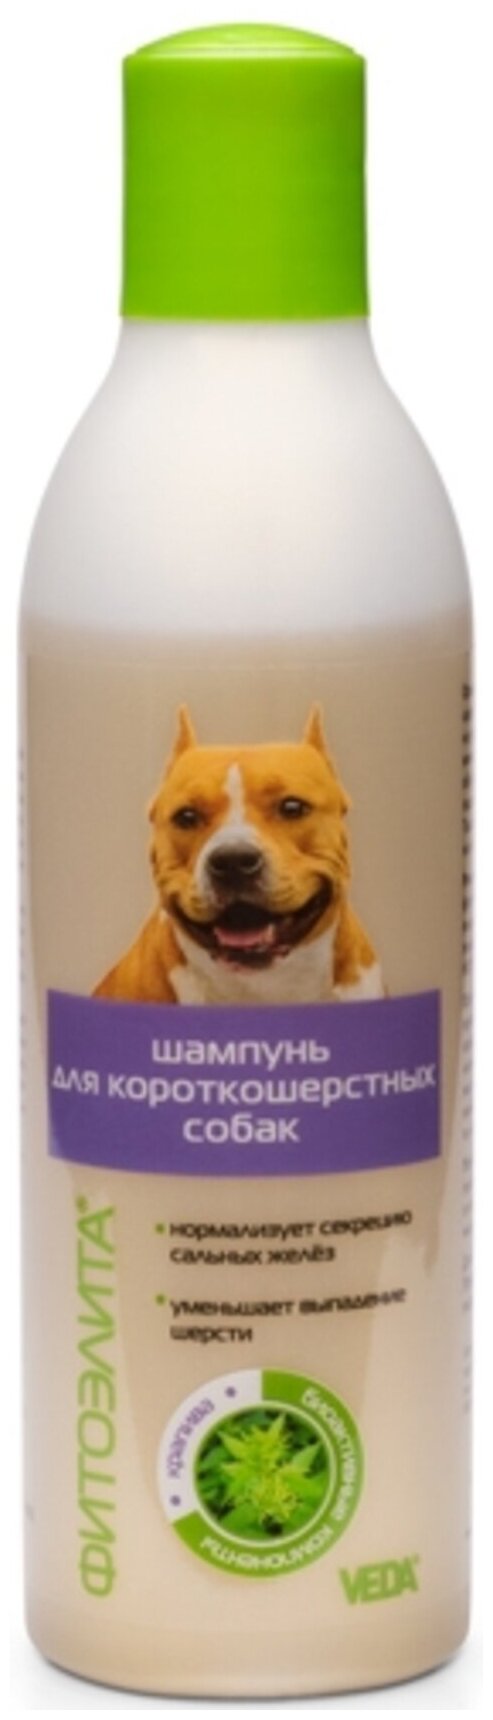 ФИТОЭЛИТА® шампунь для короткошерстных собак, 220 мл, VEDA